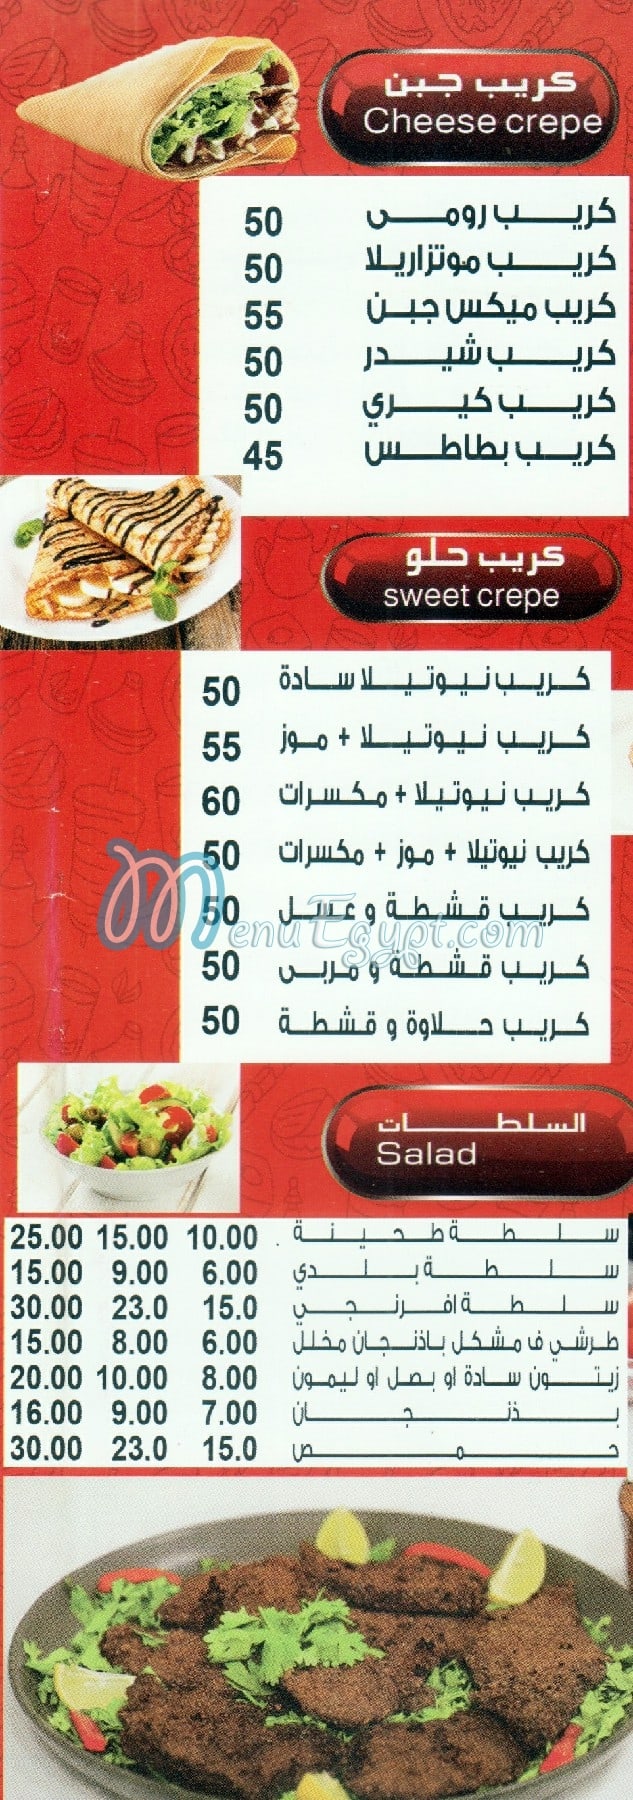 El Shabrawy El Mohandessin delivery menu